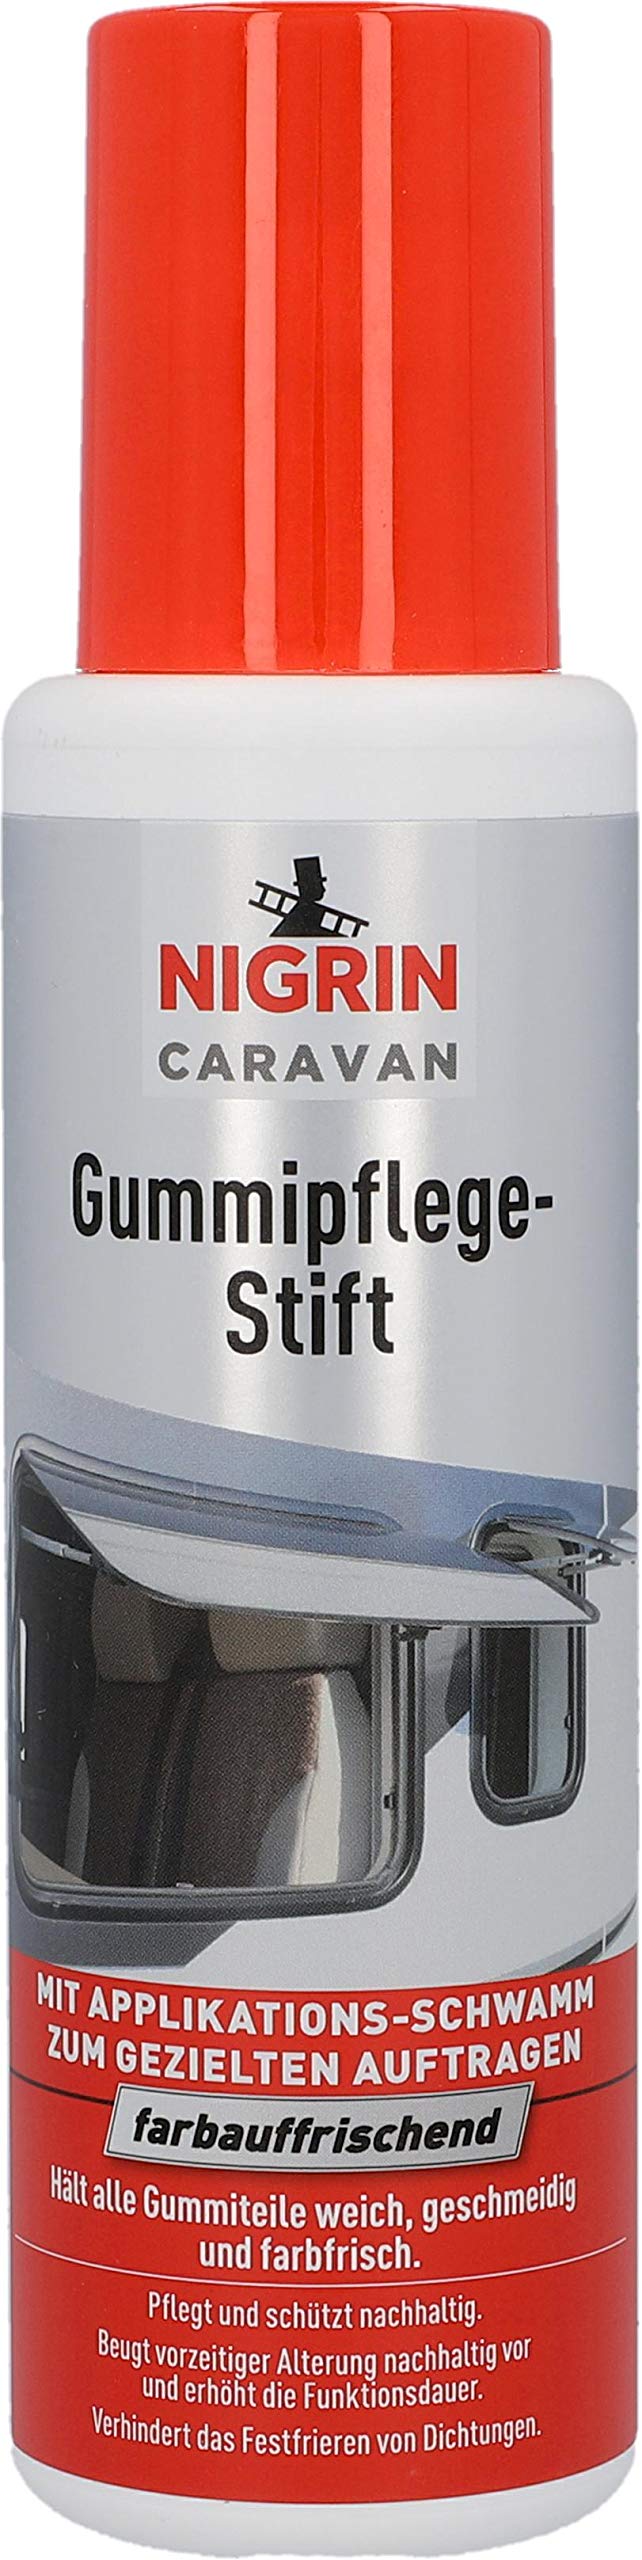 NIGRIN 20252 Caravan Gummipflege-Stift, 250 ml, lösungsmittel- und silikonfrei, pflegt und schützt nachhaltig von NIGRIN